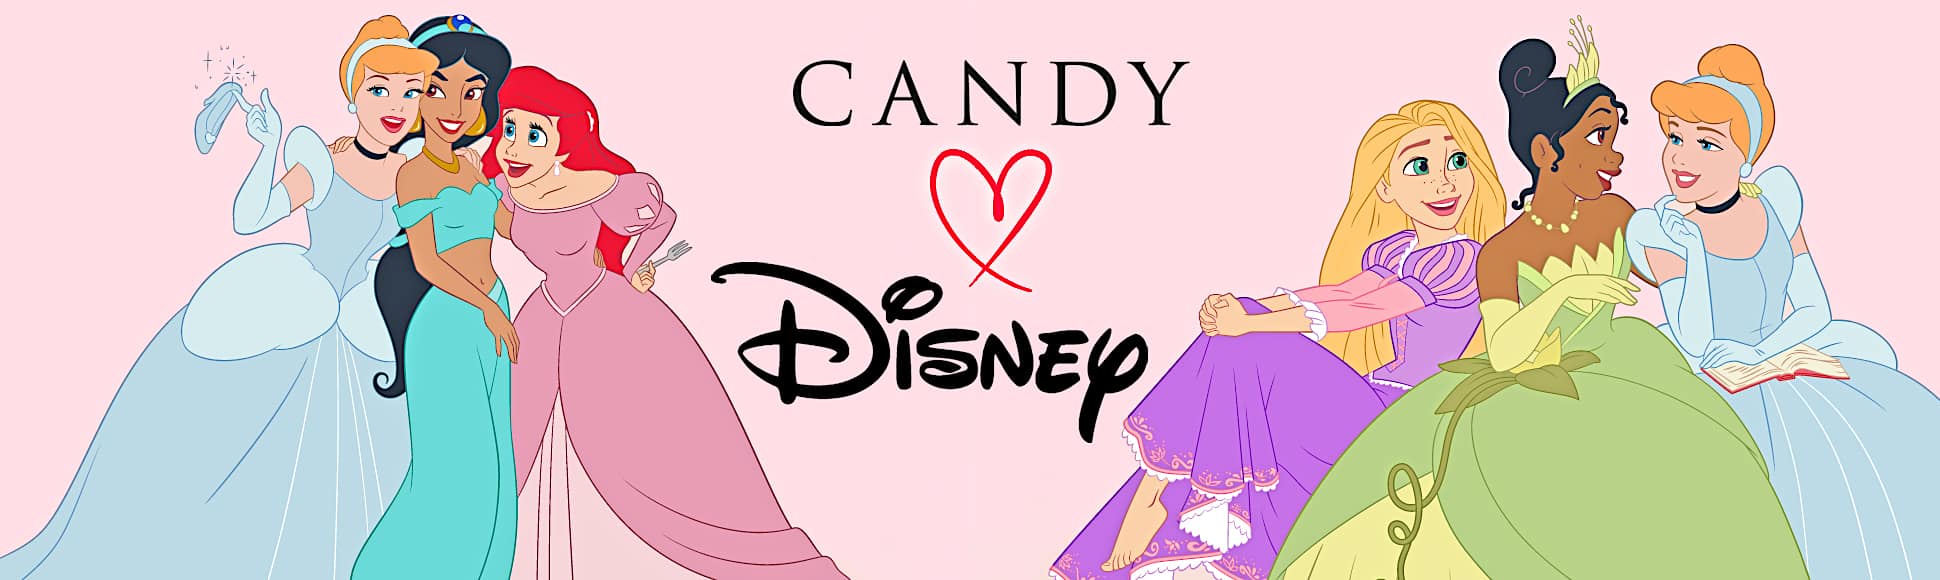 Cinderella Arielle Elsa Jasmin alle Disney Prinzessinnen auf einem Bild